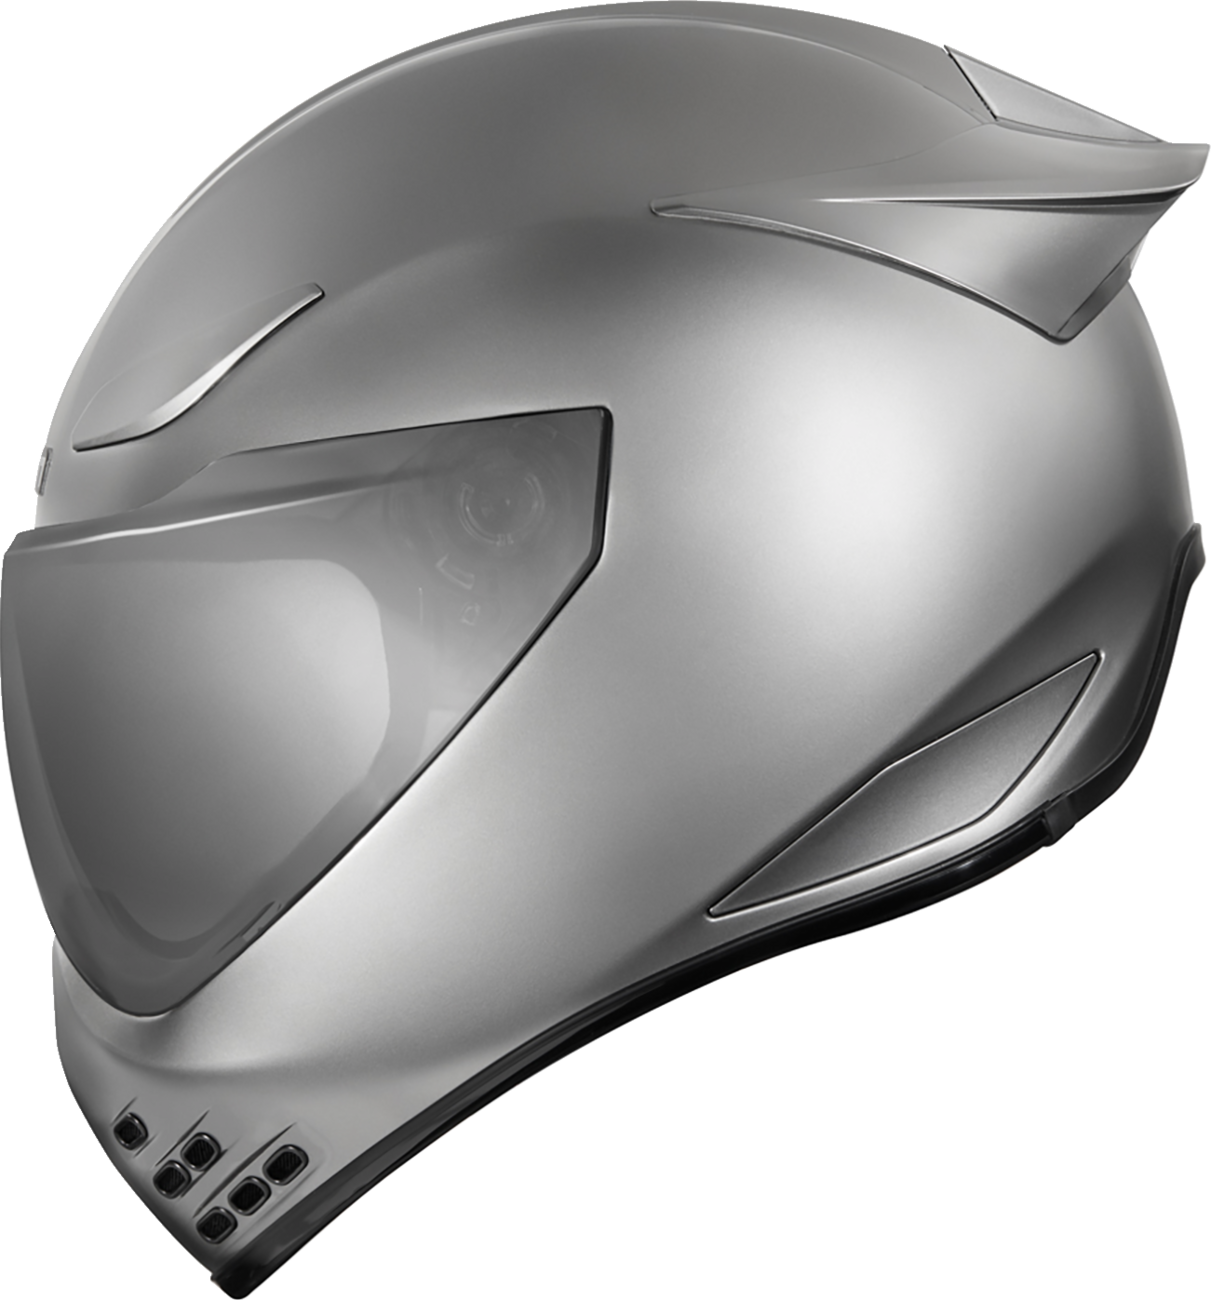 ICON Domain™ Helmet - Cornelius - Silver - Large 0101-14975